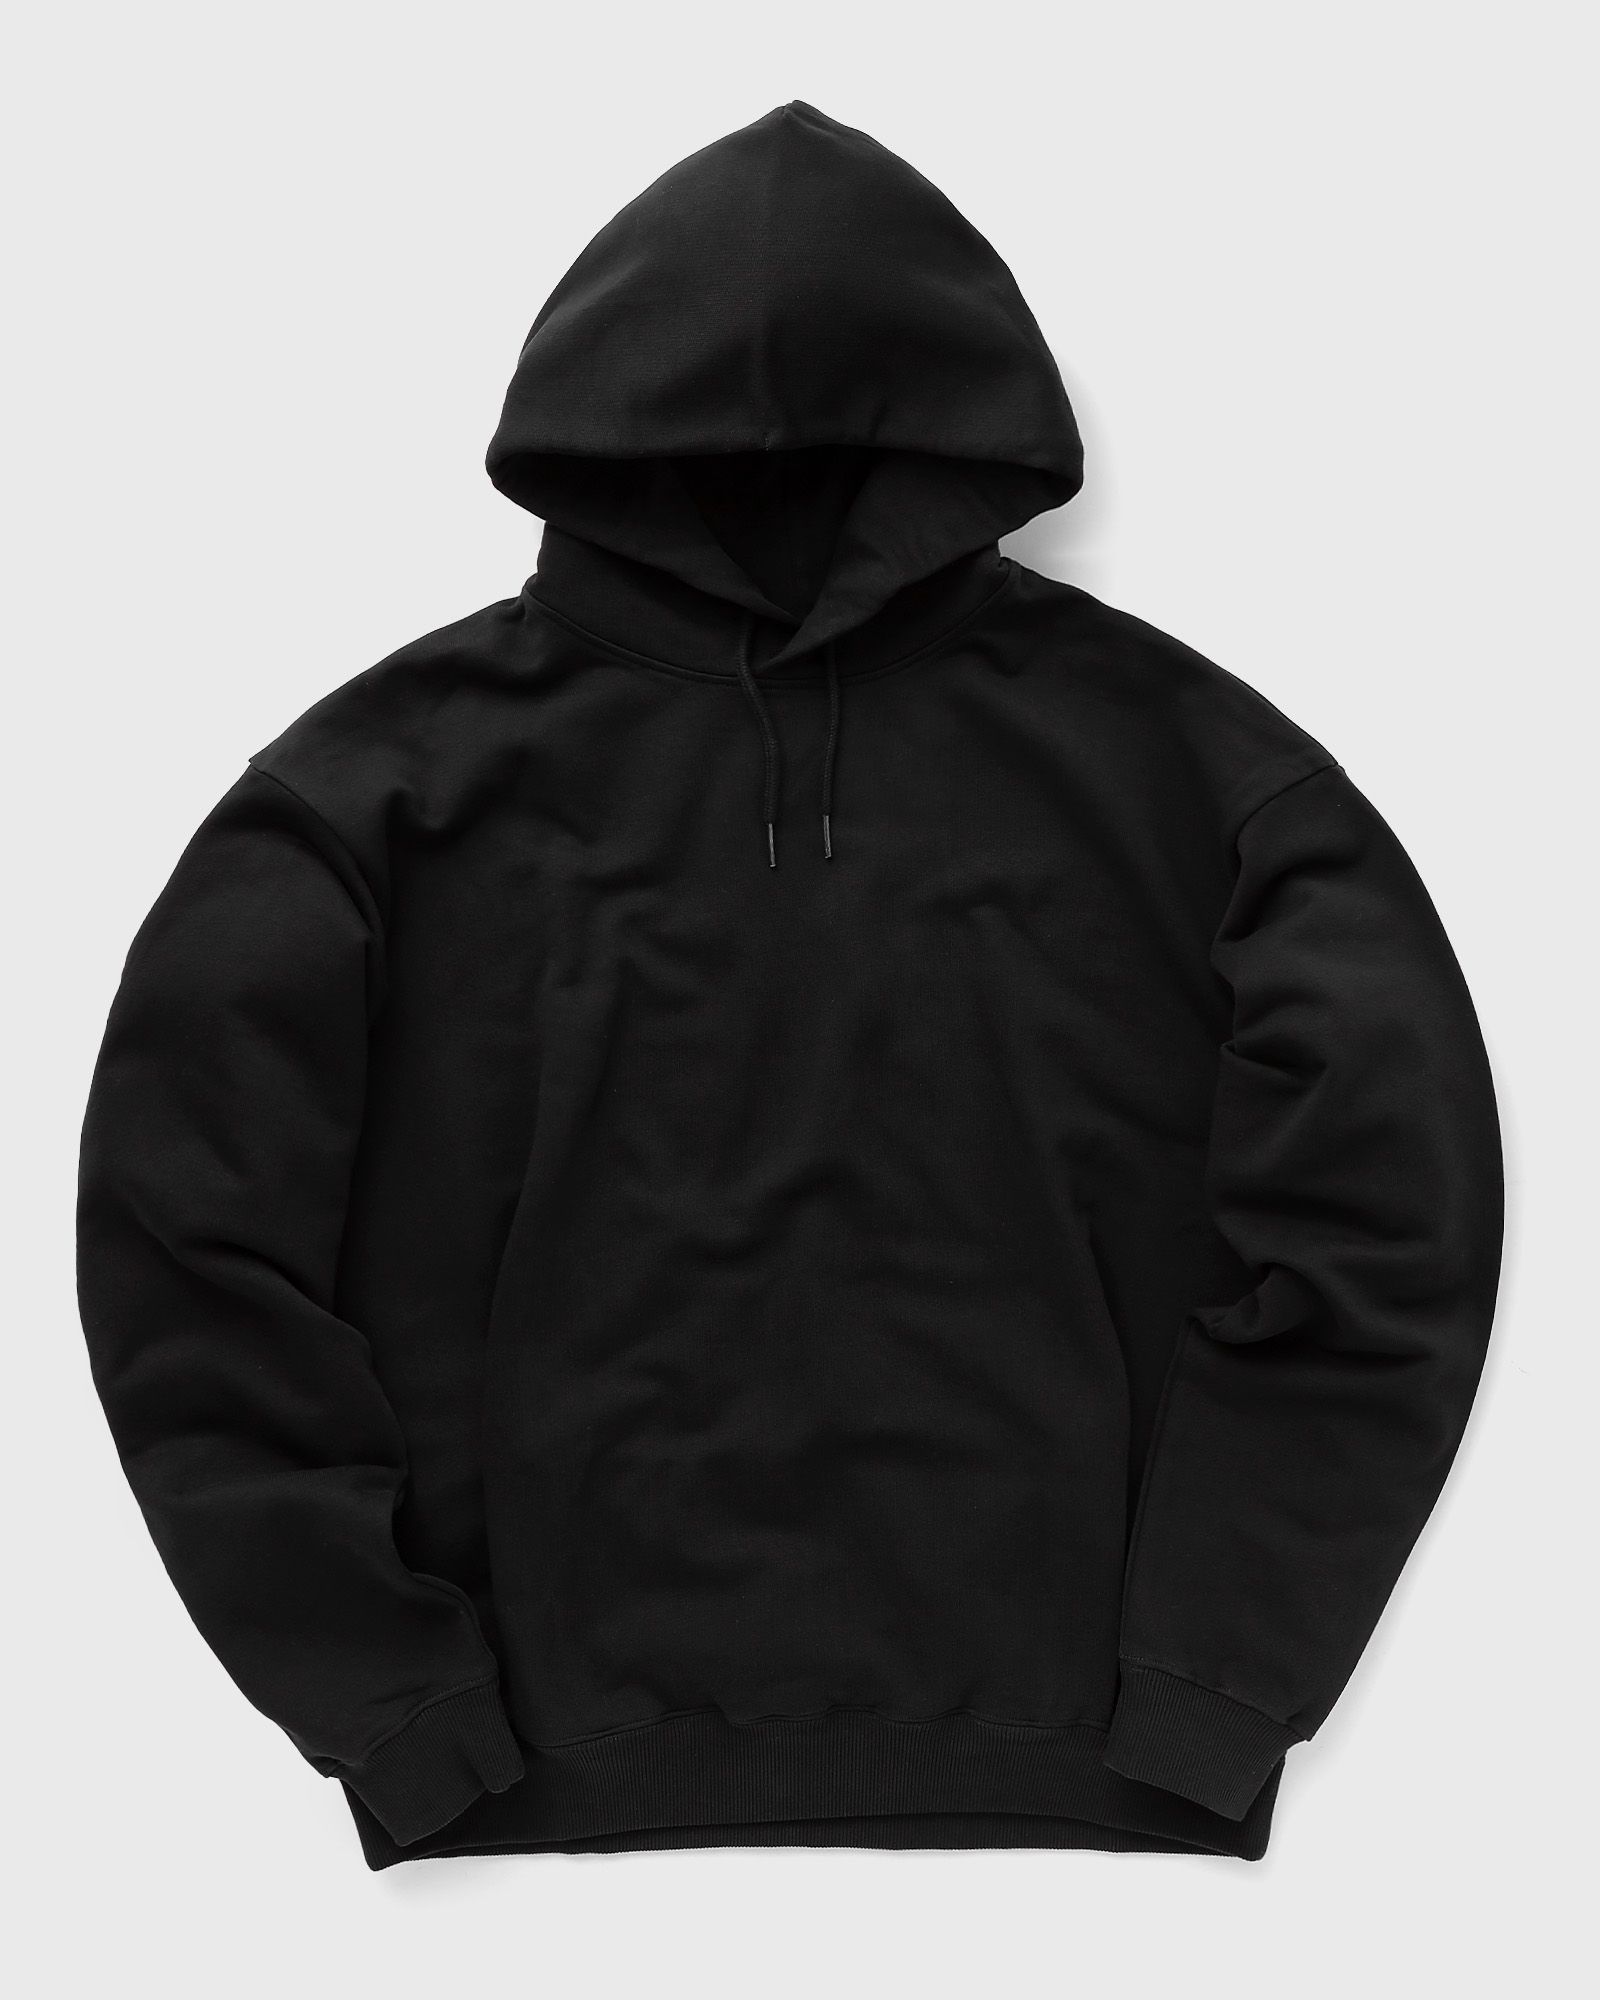 Martine Rose - classic hoodie men hoodies black in größe:s